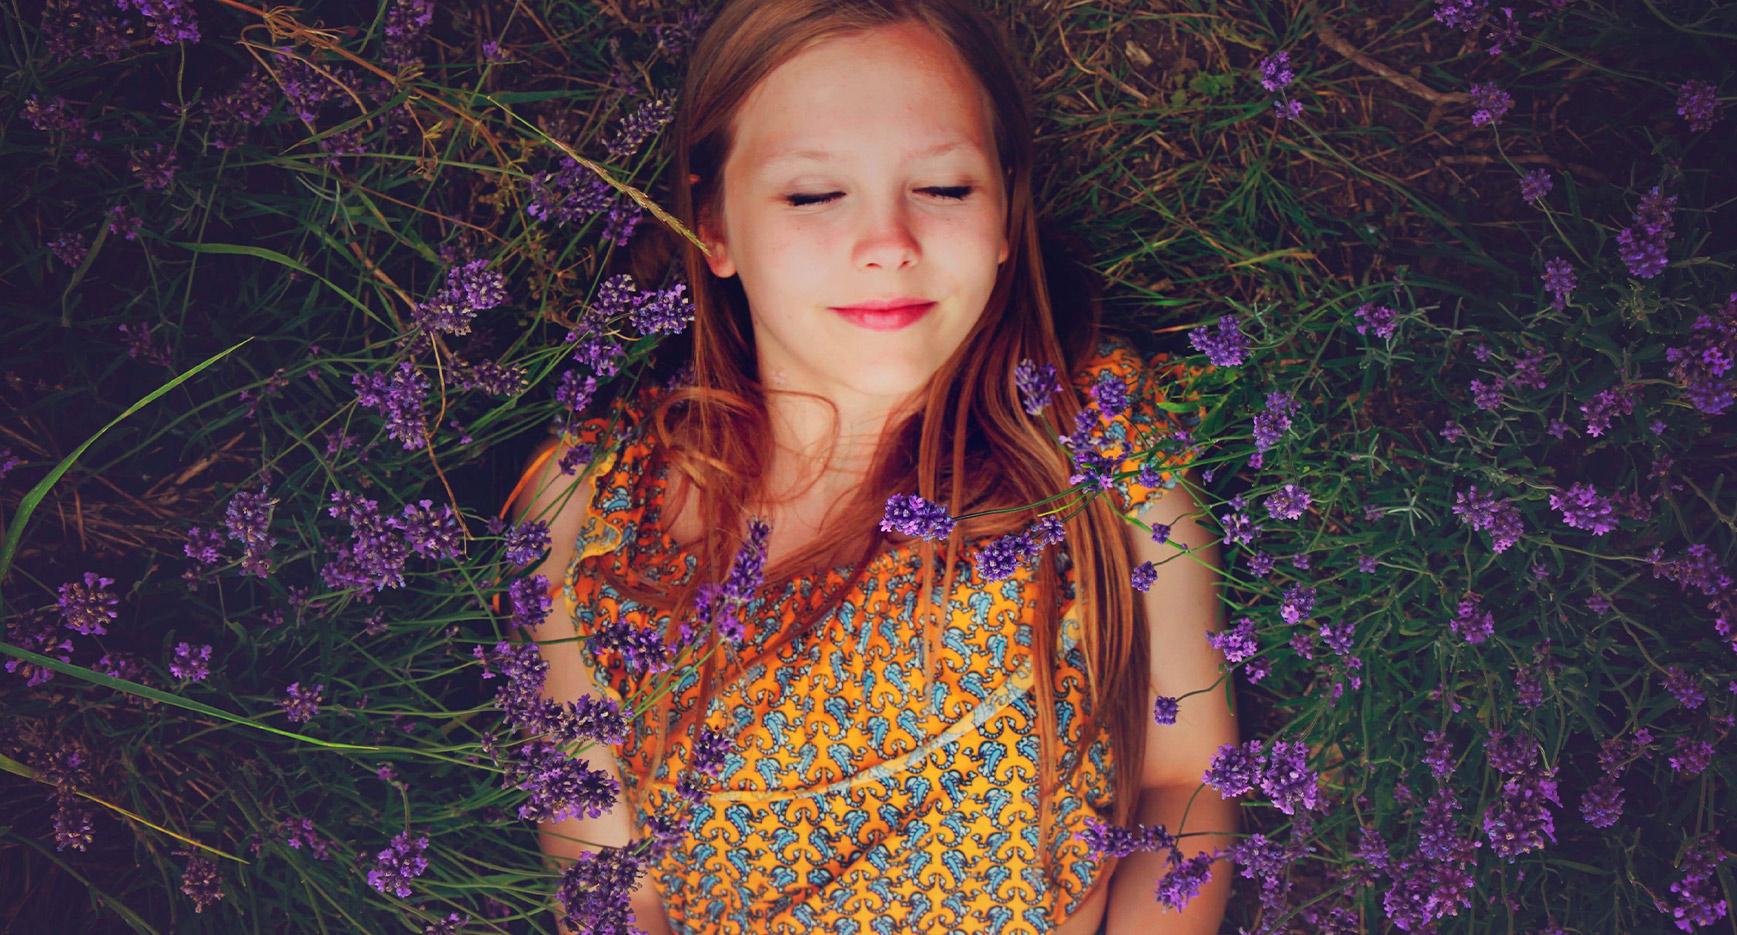 Keltaiseen mekkoon pukeutunut lapsi makaa violettien kukkien keskellä ja hymyilee silmät kiinni.